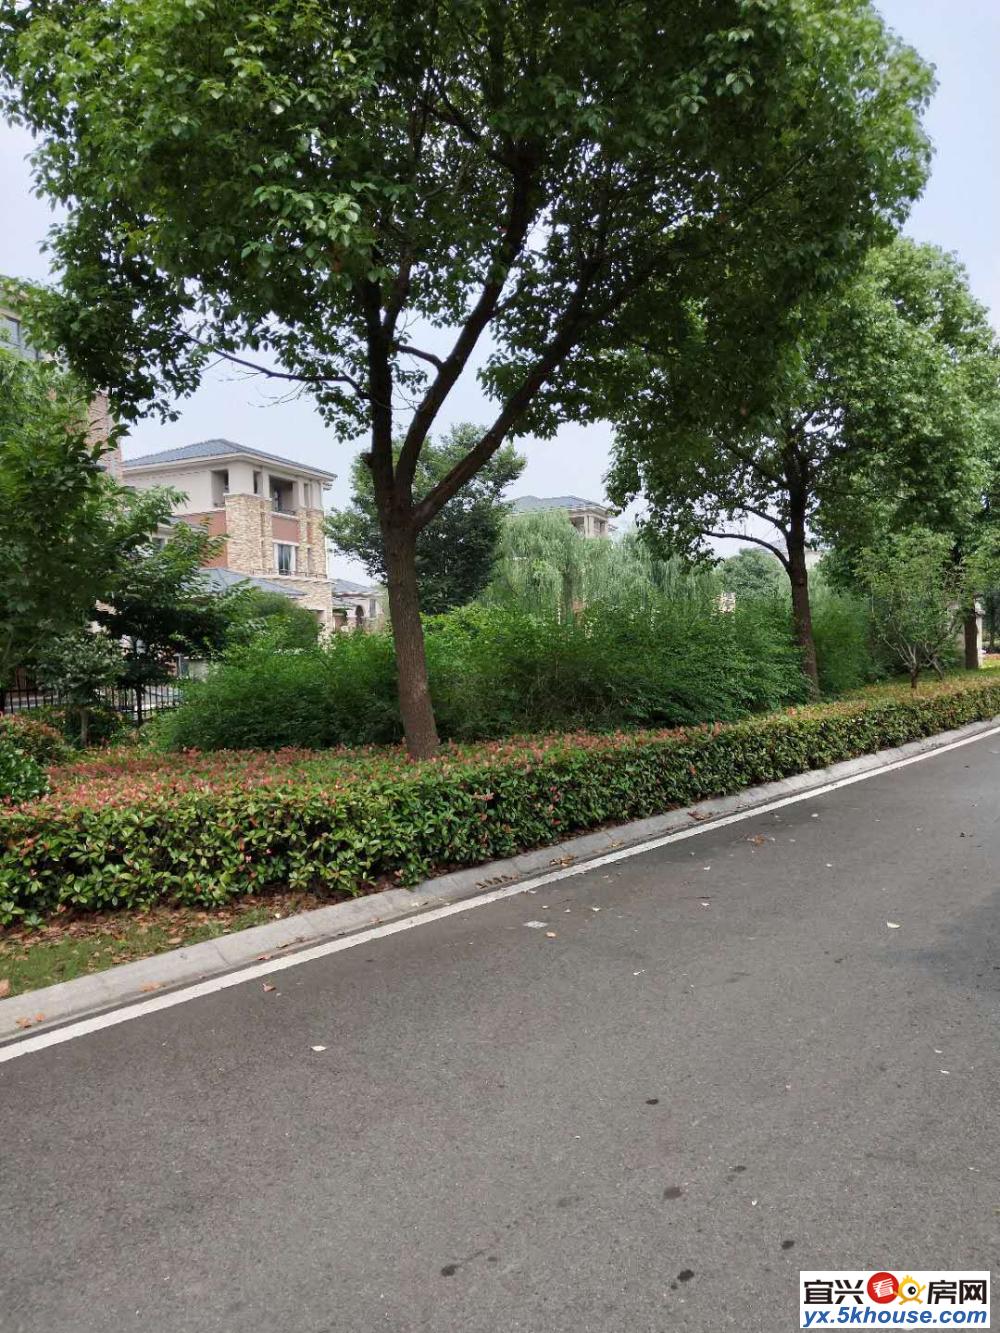 宜兴东锦家园 近无锡地铁 百年名校的后花园 现房发售教授之乡